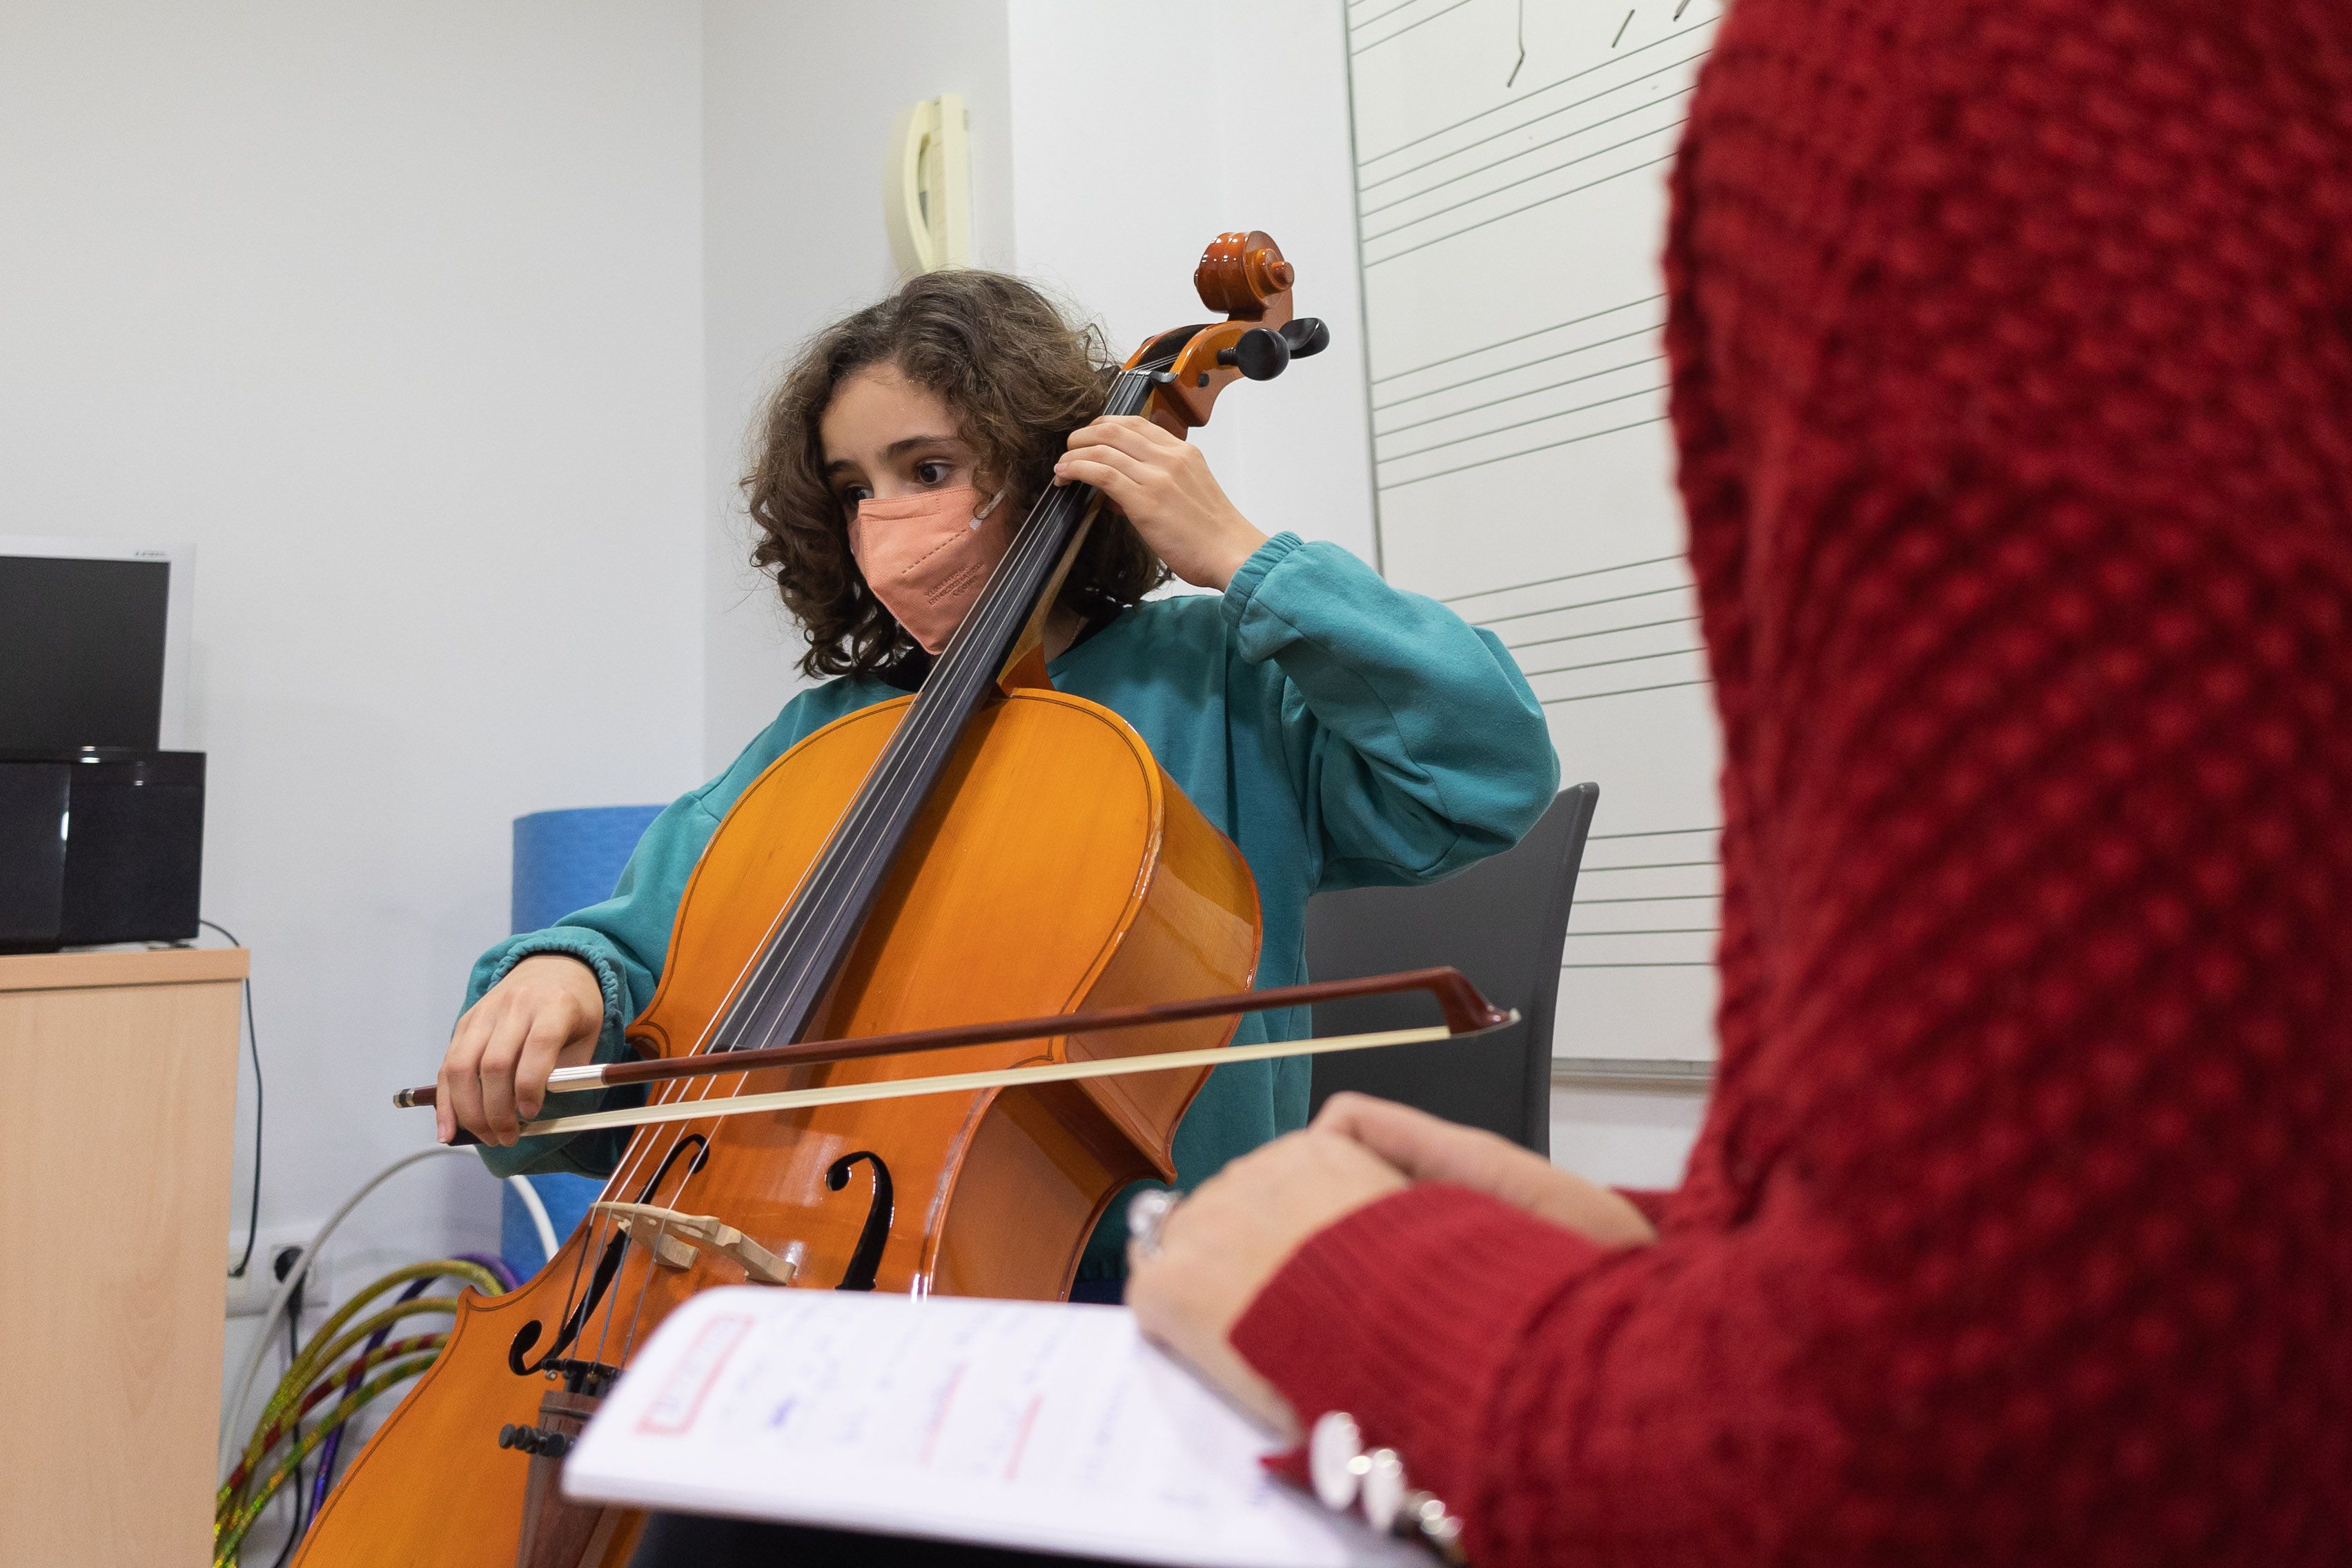 El violonchelo también está entre los instrumentos elegidos por los alumnos de este centro de estudios musicales